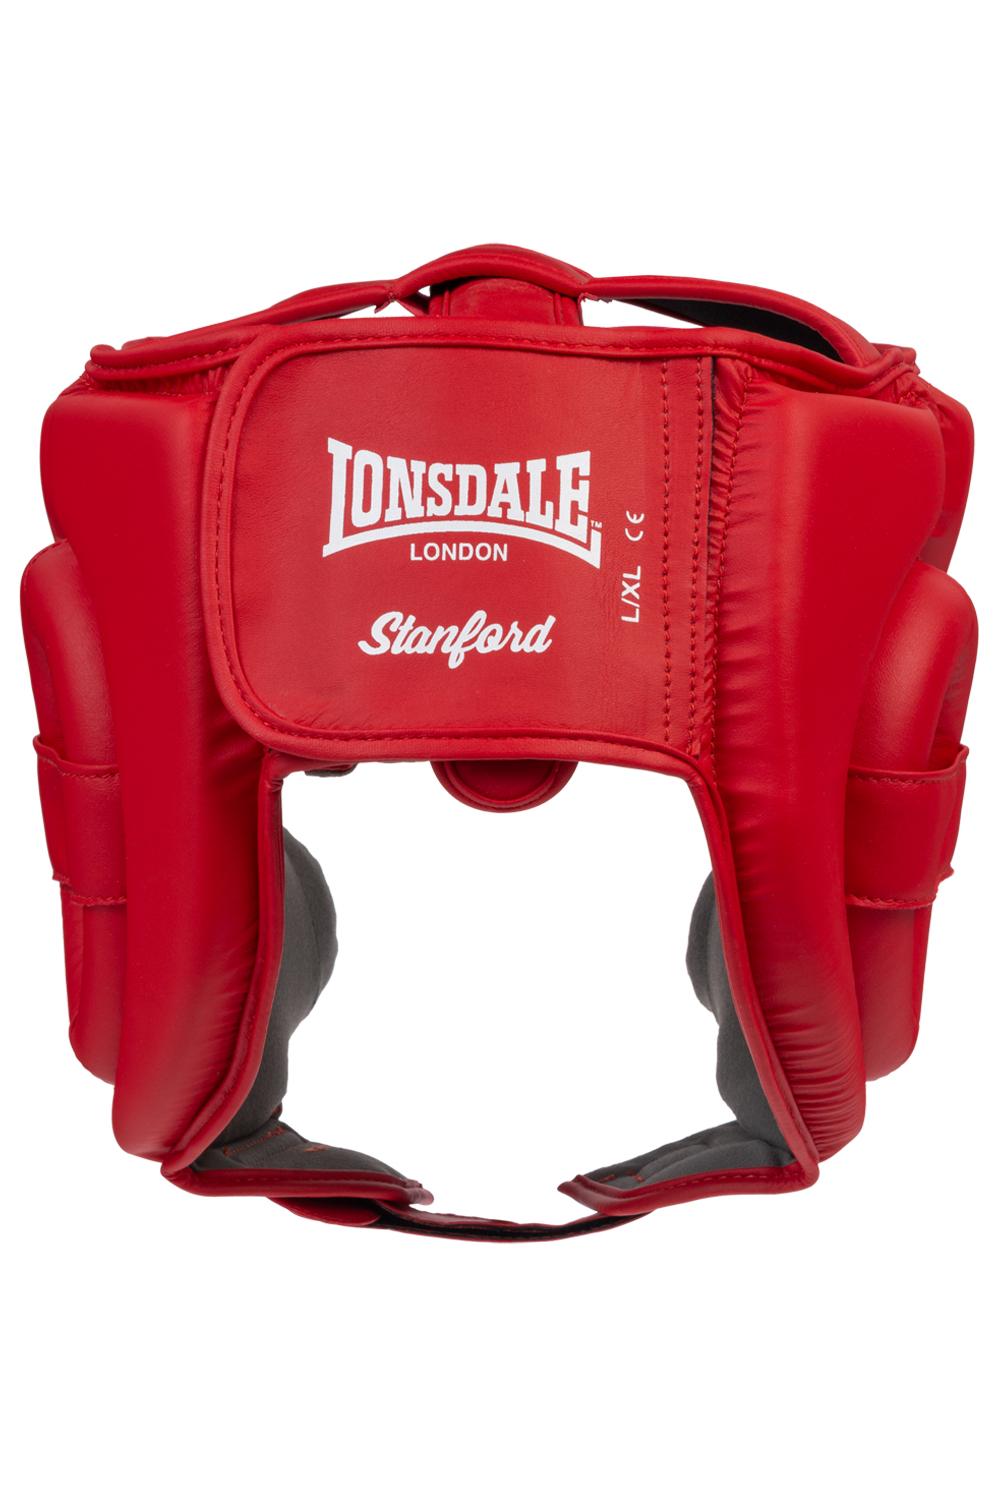 Lonsdale Boxing Kopfschutz - red, Kopfschutz, Ausrüstung